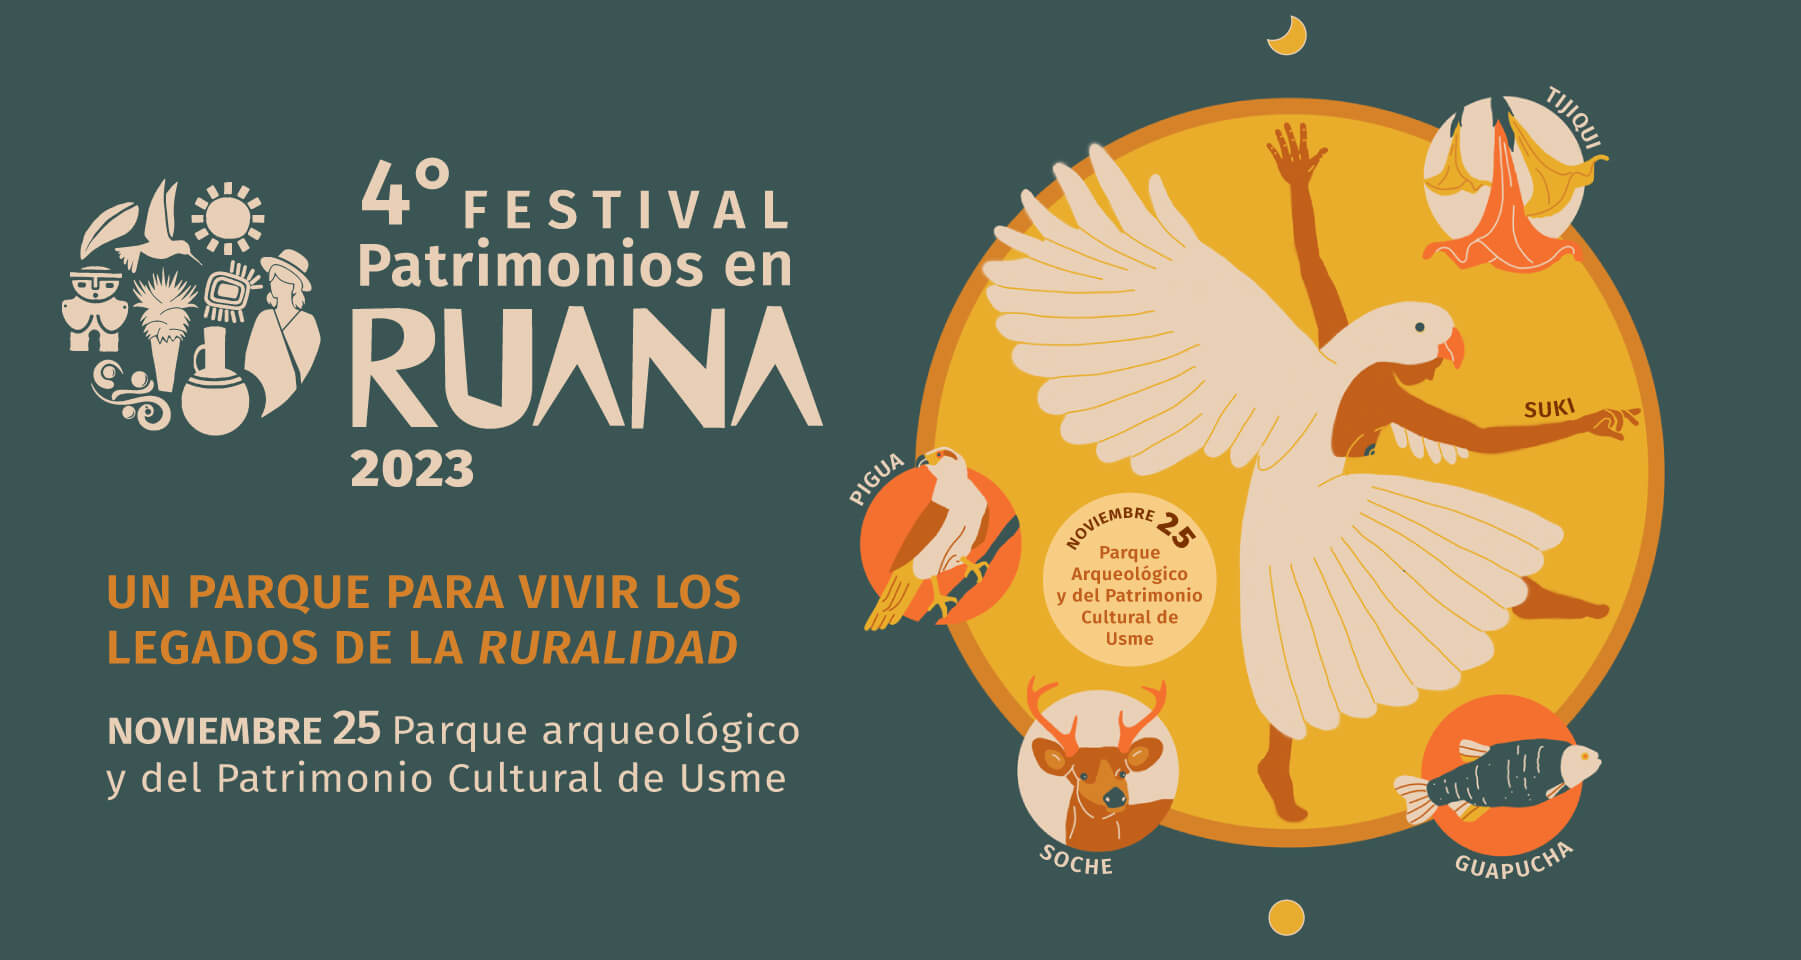 4to festival Patrimonios en Ruana 2023 Un parque para vivir los legados de la ruralidad Noviembre 25 parque arqueológico y del patrimonio cultural de usme